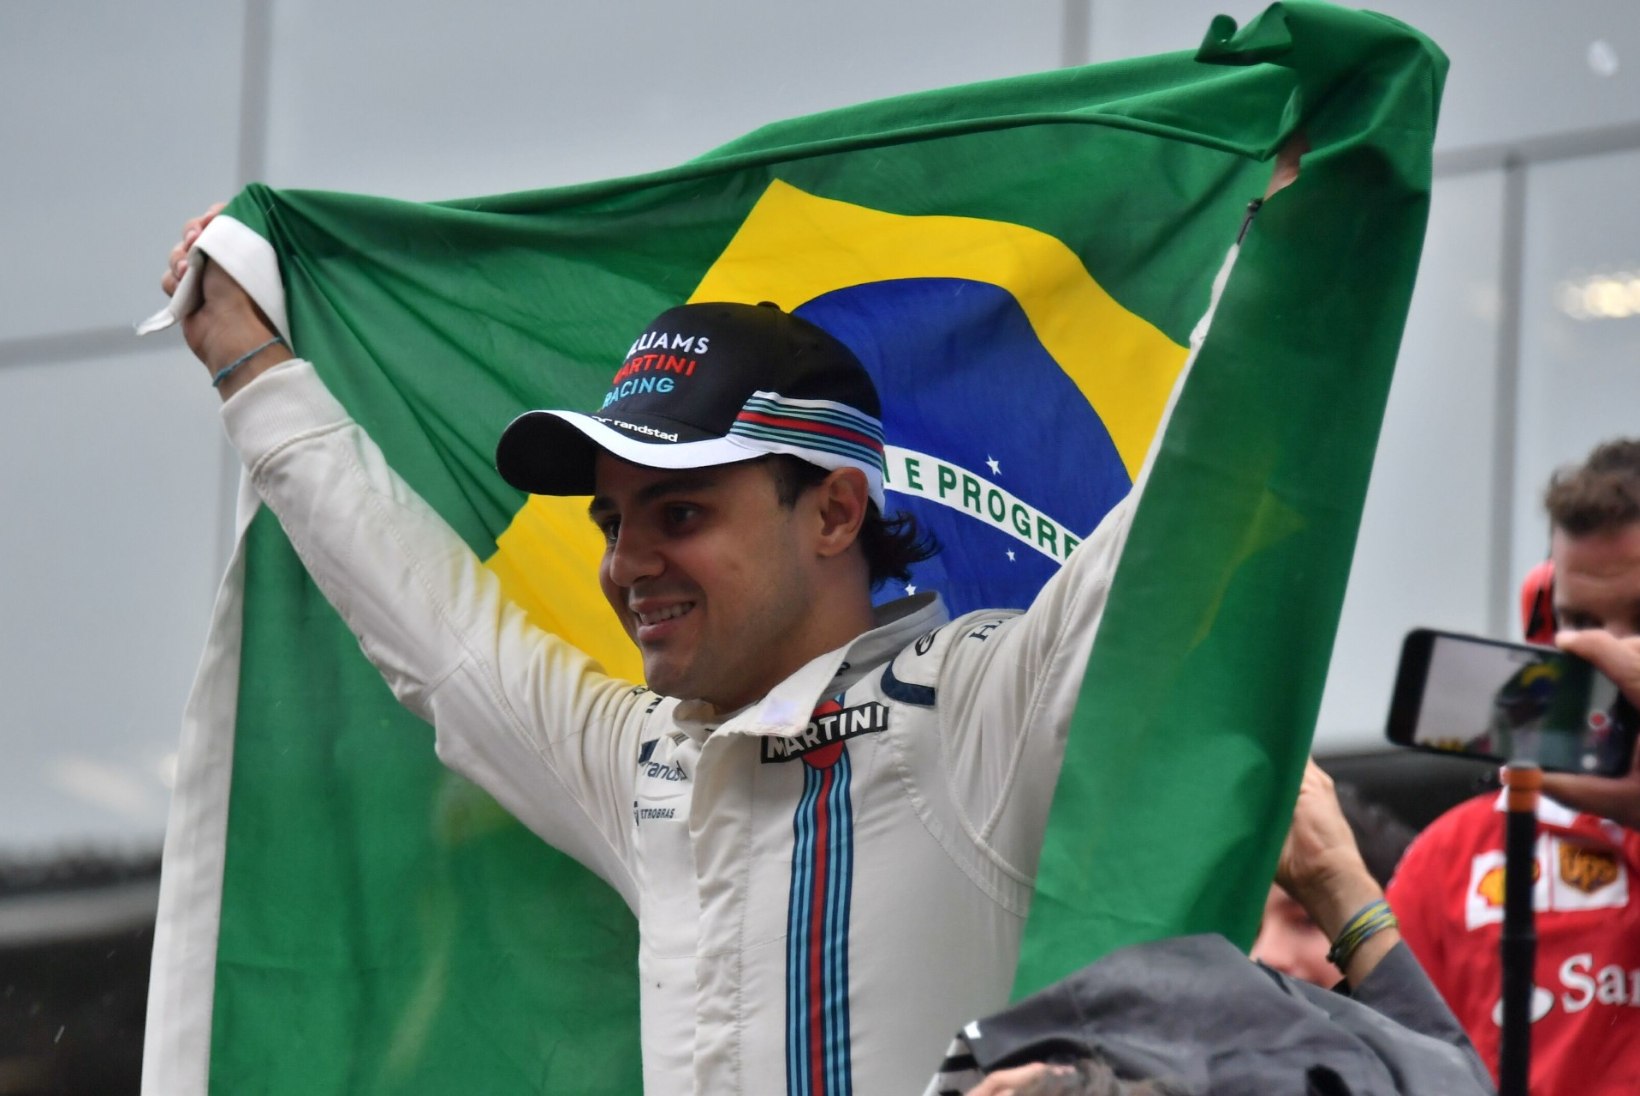 Kaks ja pool nädalat erus olnud Brasiilia äss võib F1-sarja naasta